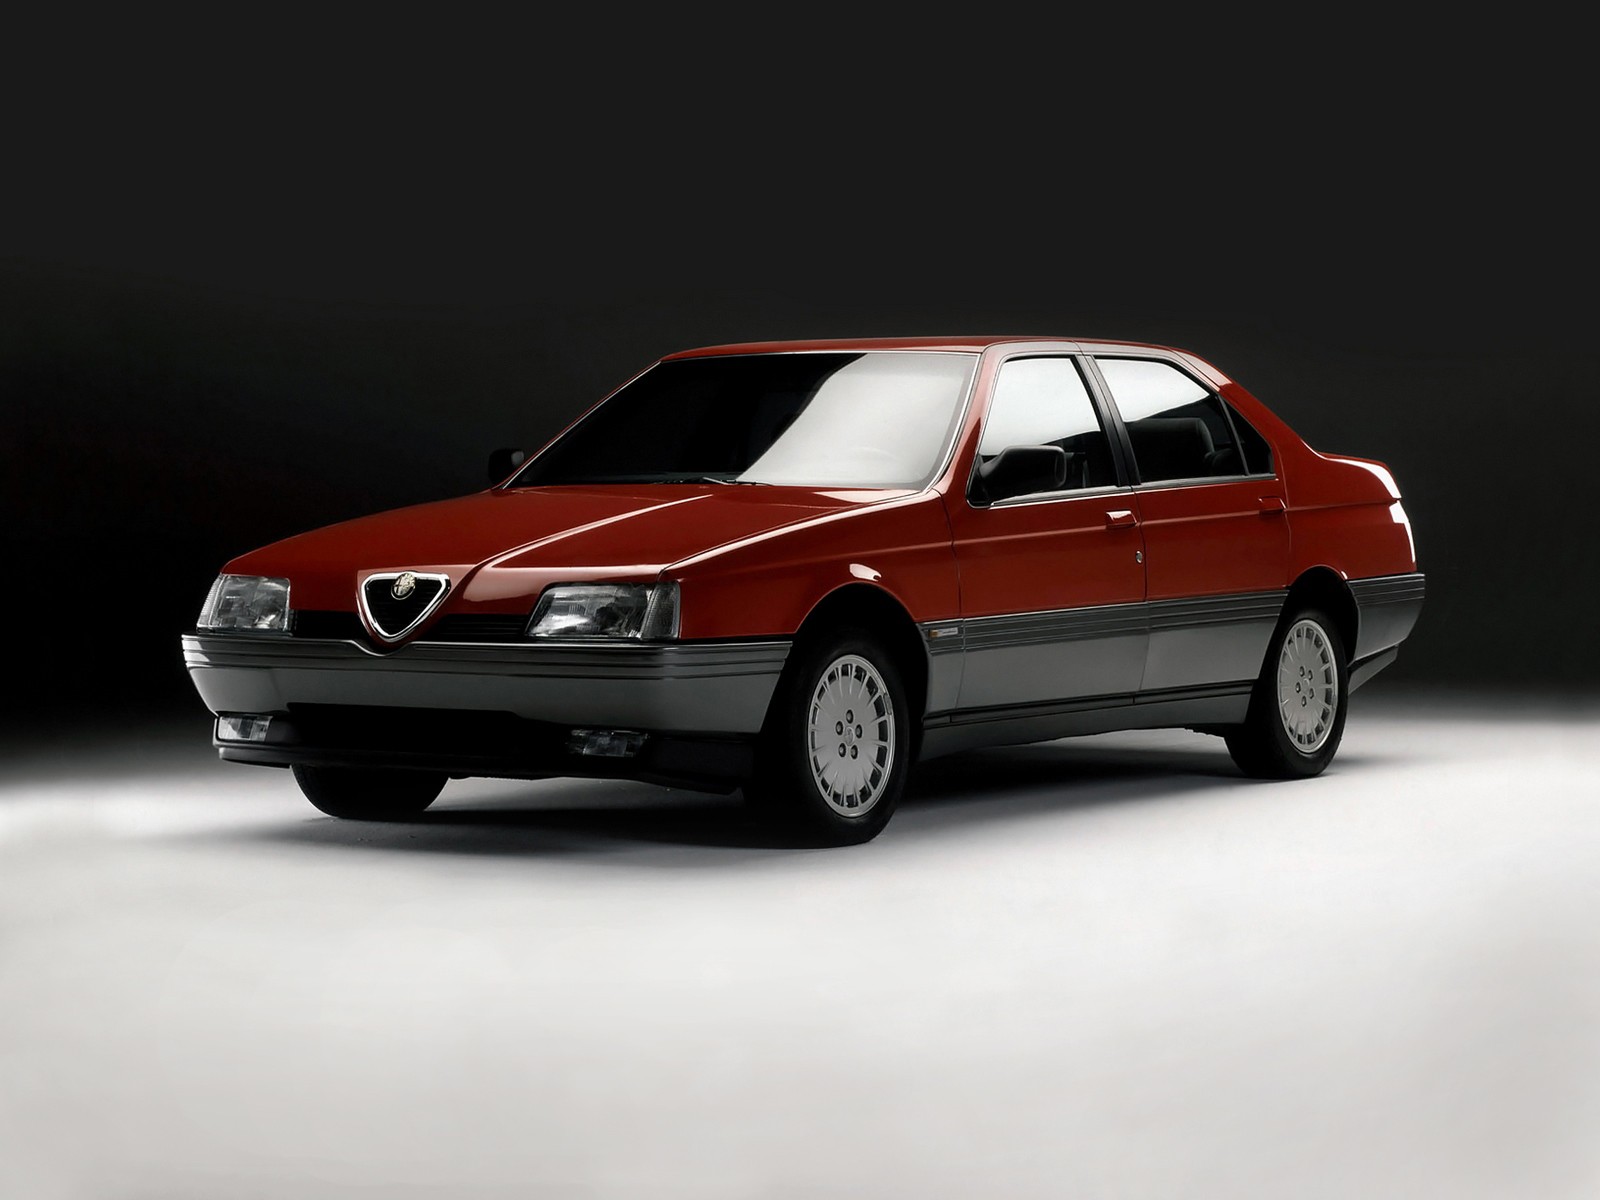 Alfa Romeo 164 - yakanaka munzira dzakawanda